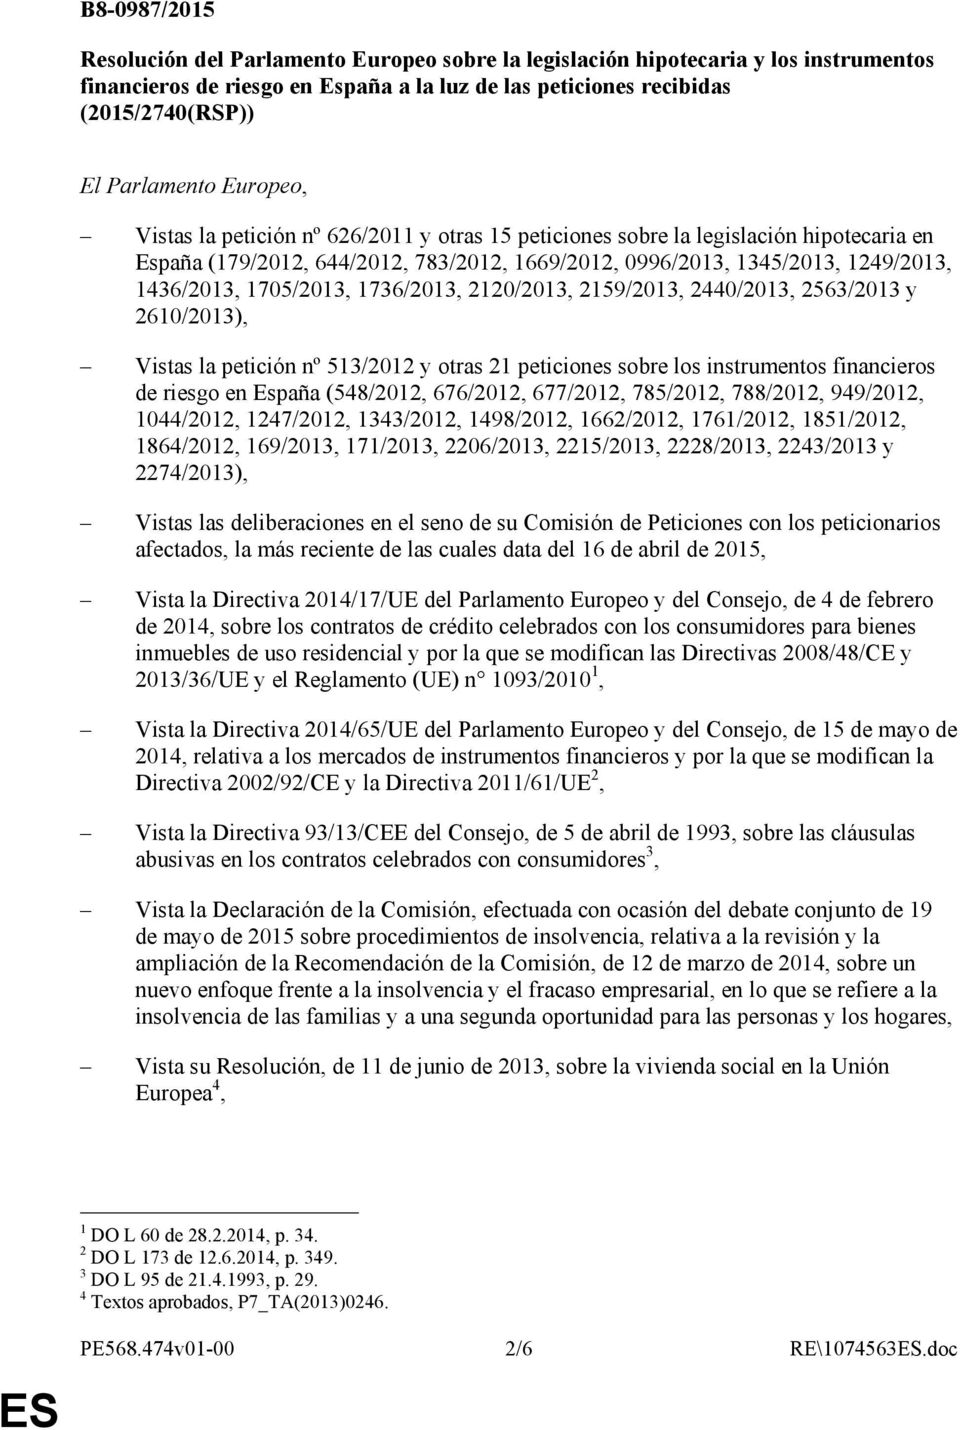 1705/2013, 1736/2013, 2120/2013, 2159/2013, 2440/2013, 2563/2013 y 2610/2013), Vistas la petición nº 513/2012 y otras 21 peticiones sobre los instrumentos financieros de riesgo en España (548/2012,